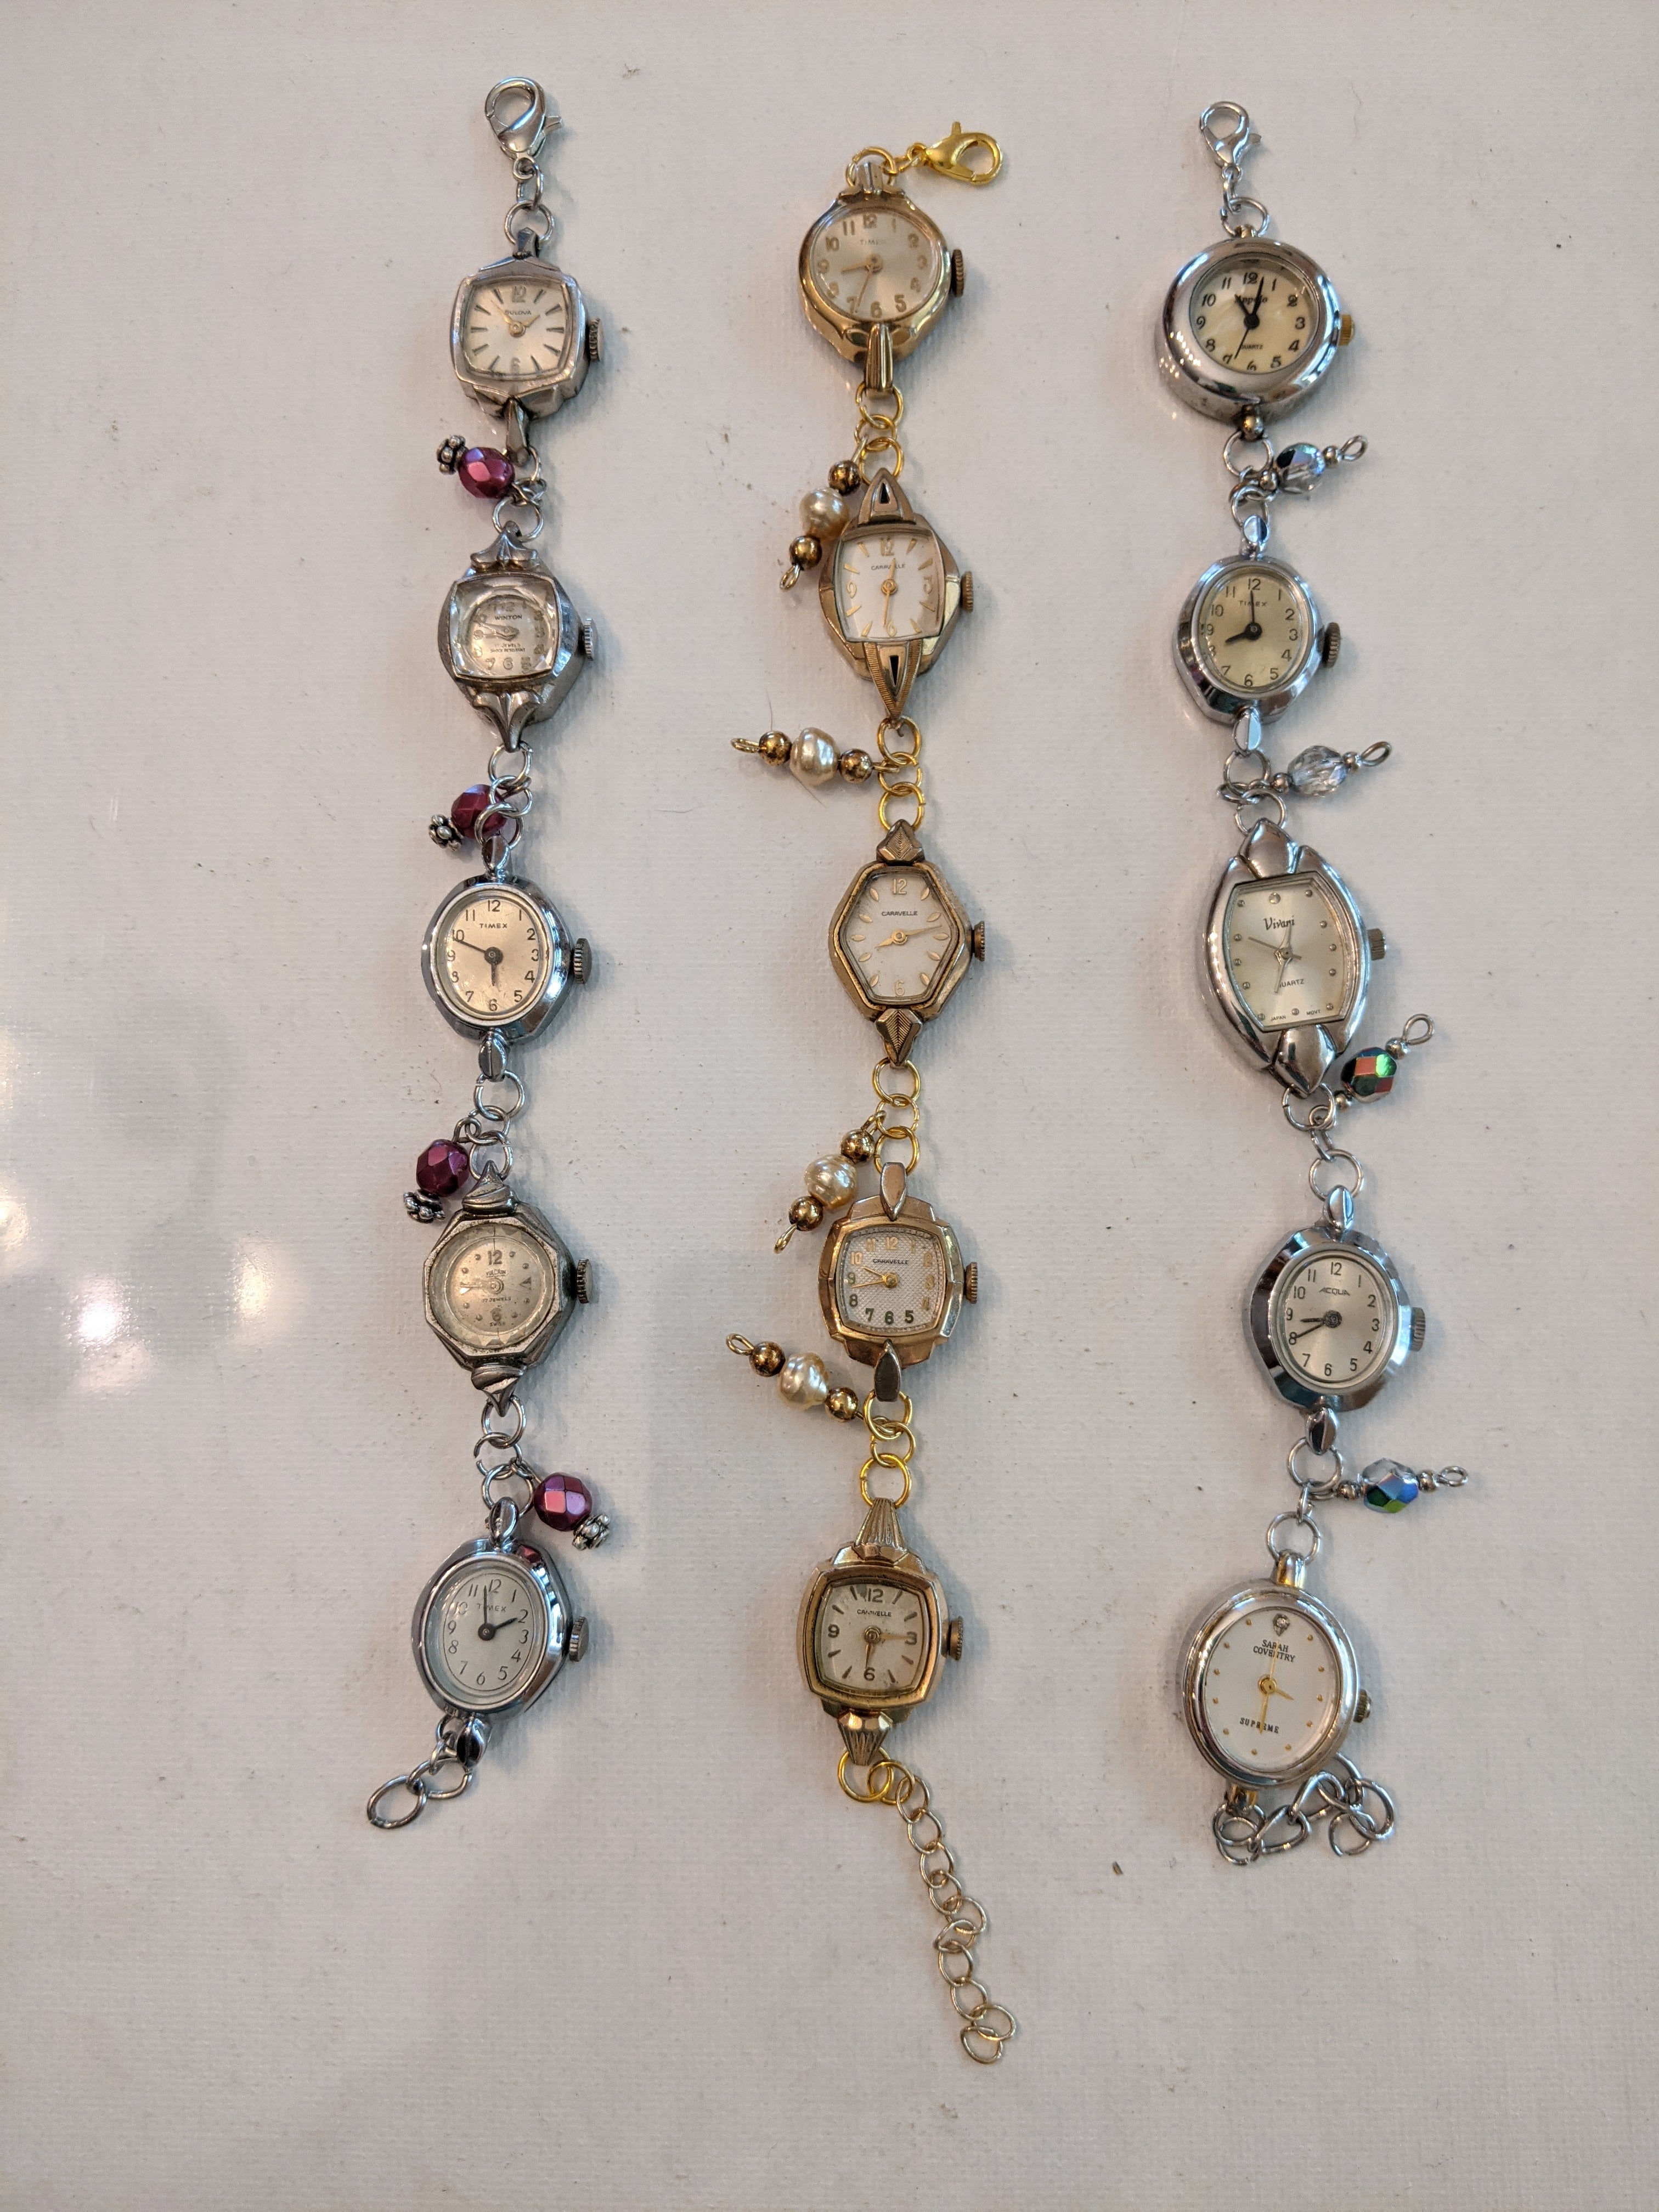 Vintage watch bracelets